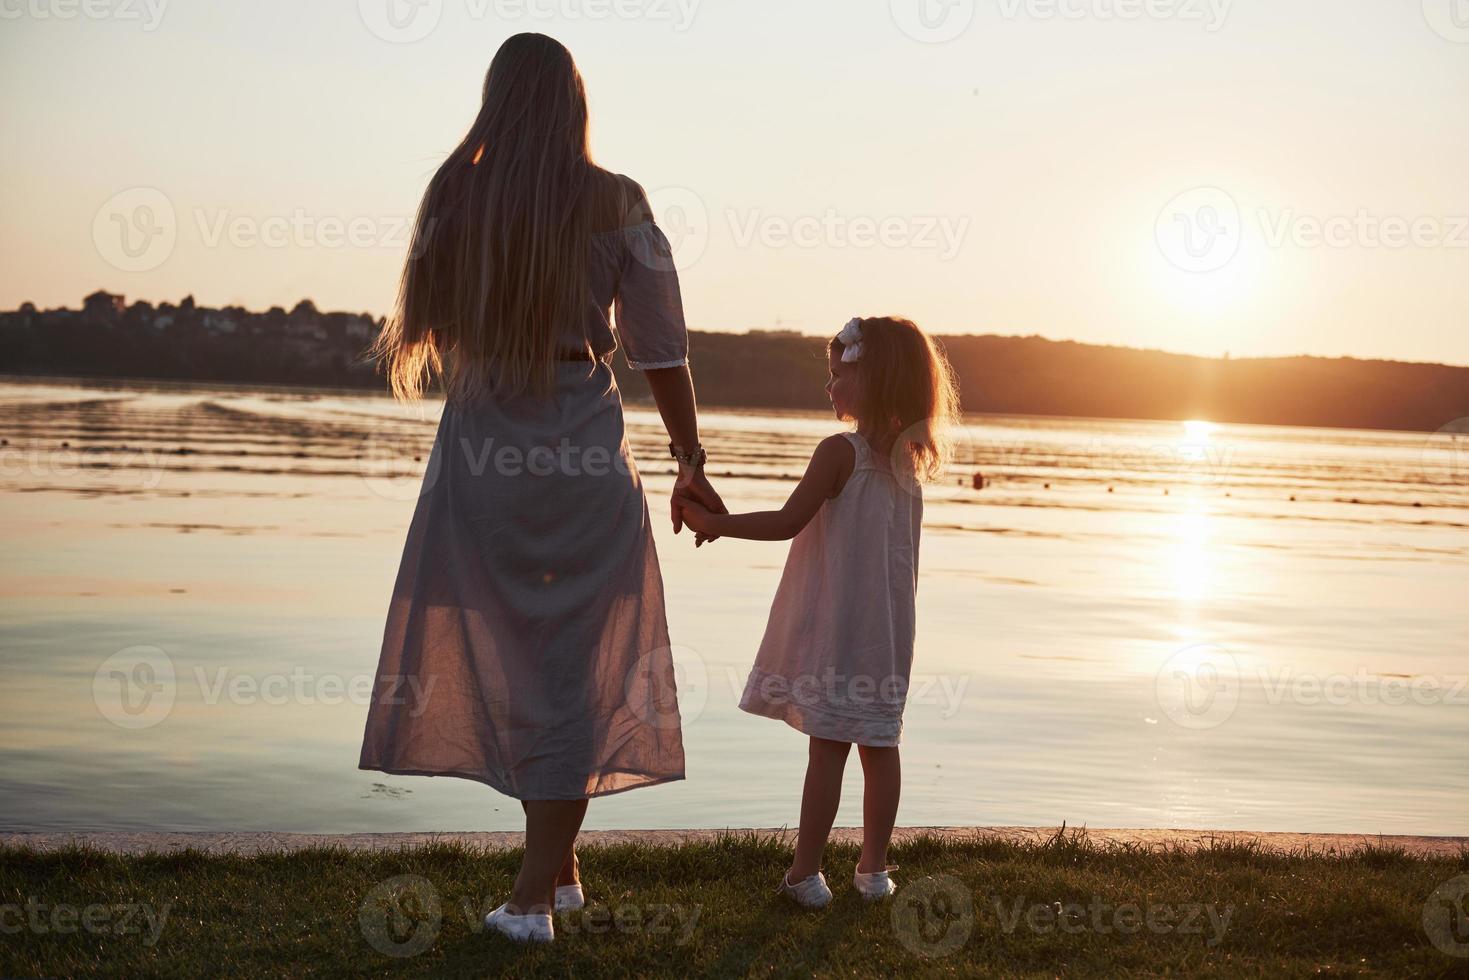 la mamma gioca con il suo bambino in vacanza vicino all'oceano, sagome al tramonto foto